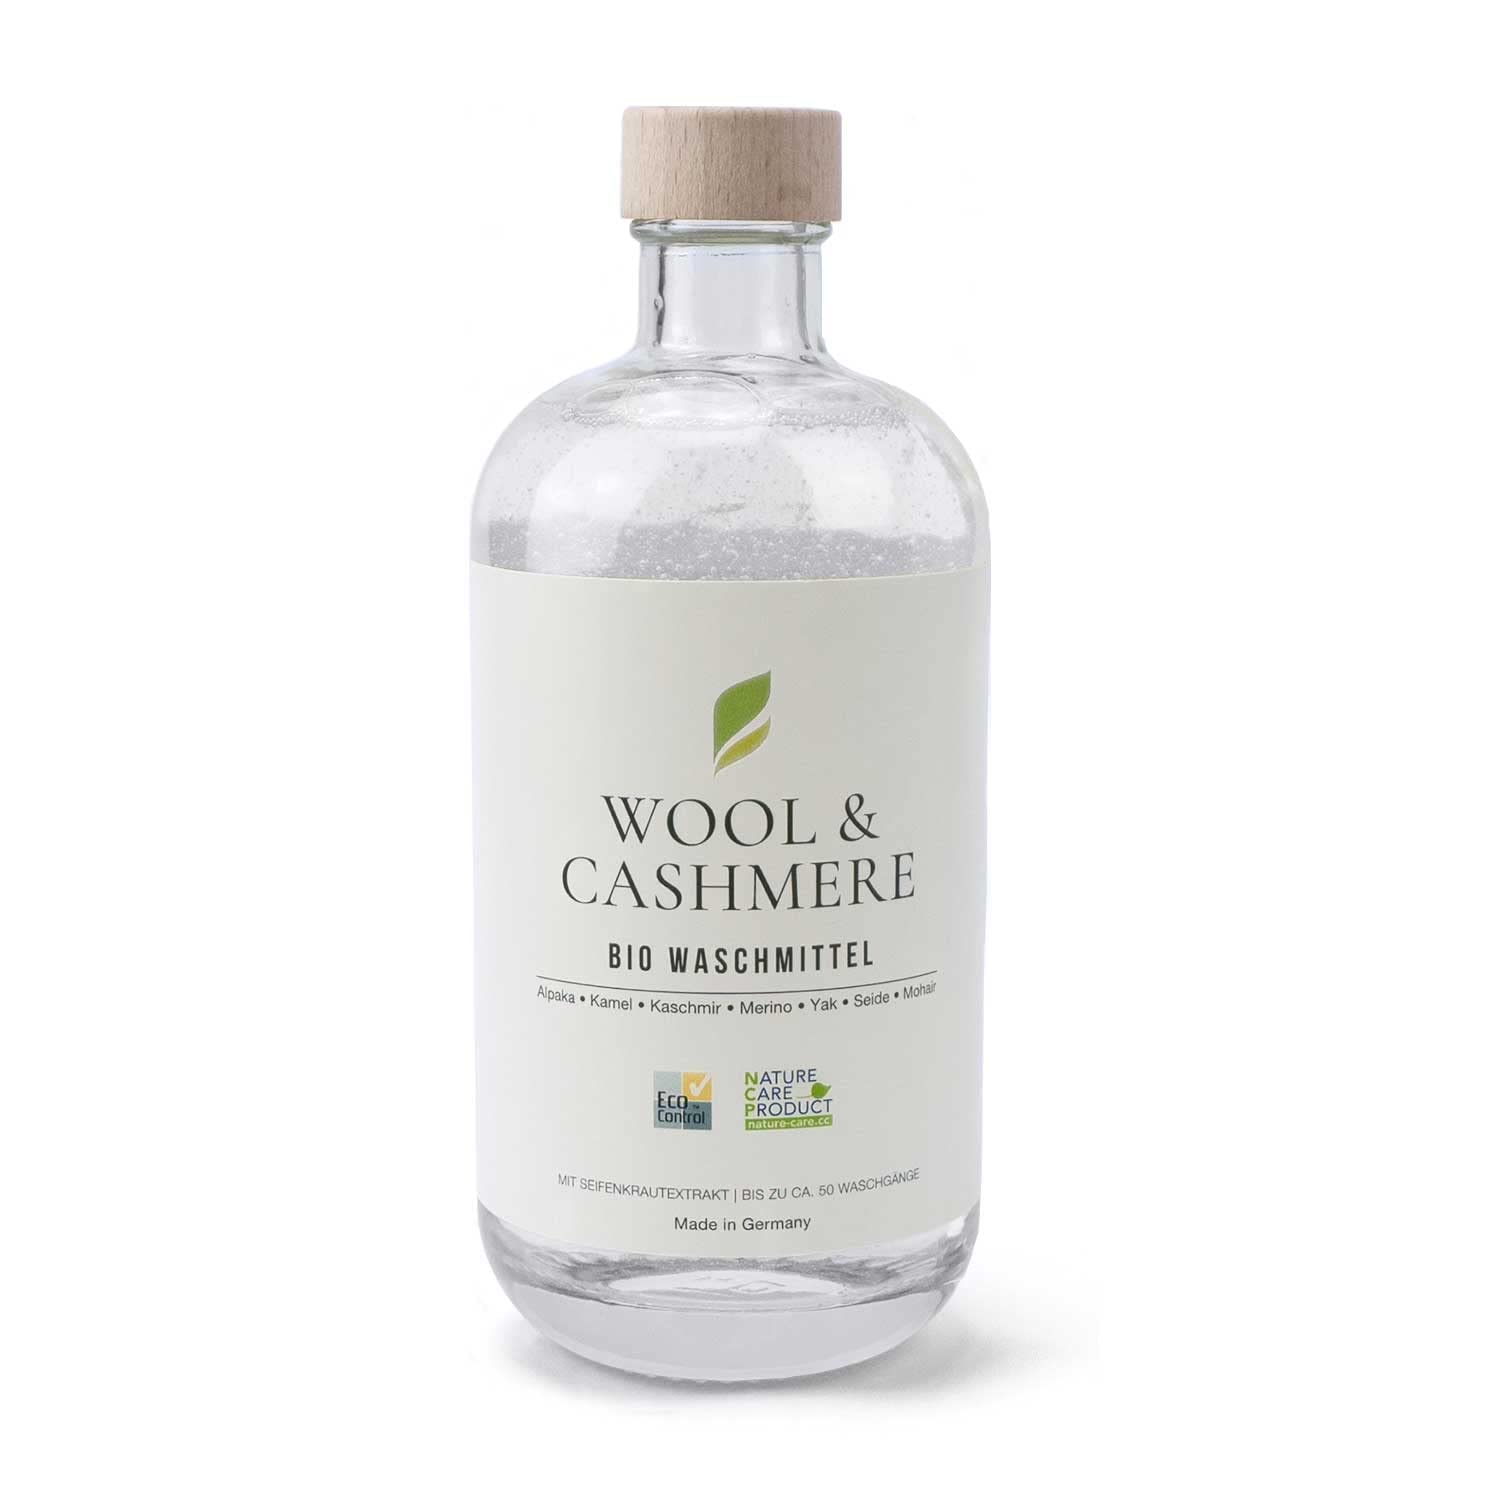 500 ml PASCUALI Bio Waschmittel Wool & Cashmere Konzentrat VEGAN bis zu ca. 50 WASCHGÄNGE Feinwaschmittel Wollwaschmittel